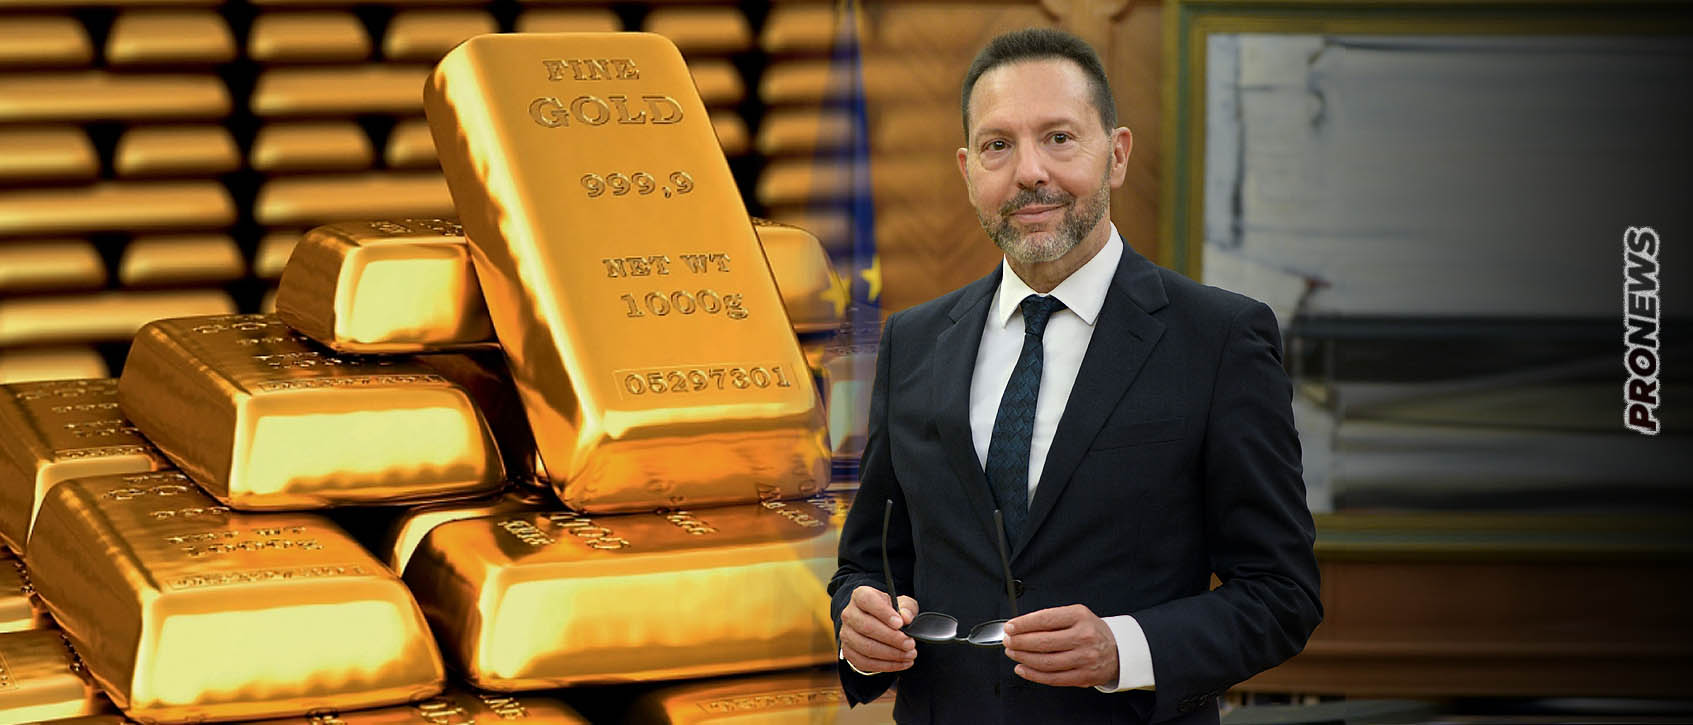 Διοικητής ΤτΕ Γιάννης Στουρνάρας: «Το 47% του χρυσού της Ελλάδας βρίσκεται στο θησαυροφυλάκιο της ΤτΕ» – Το υπόλοιπο 53% που βρίσκεται;